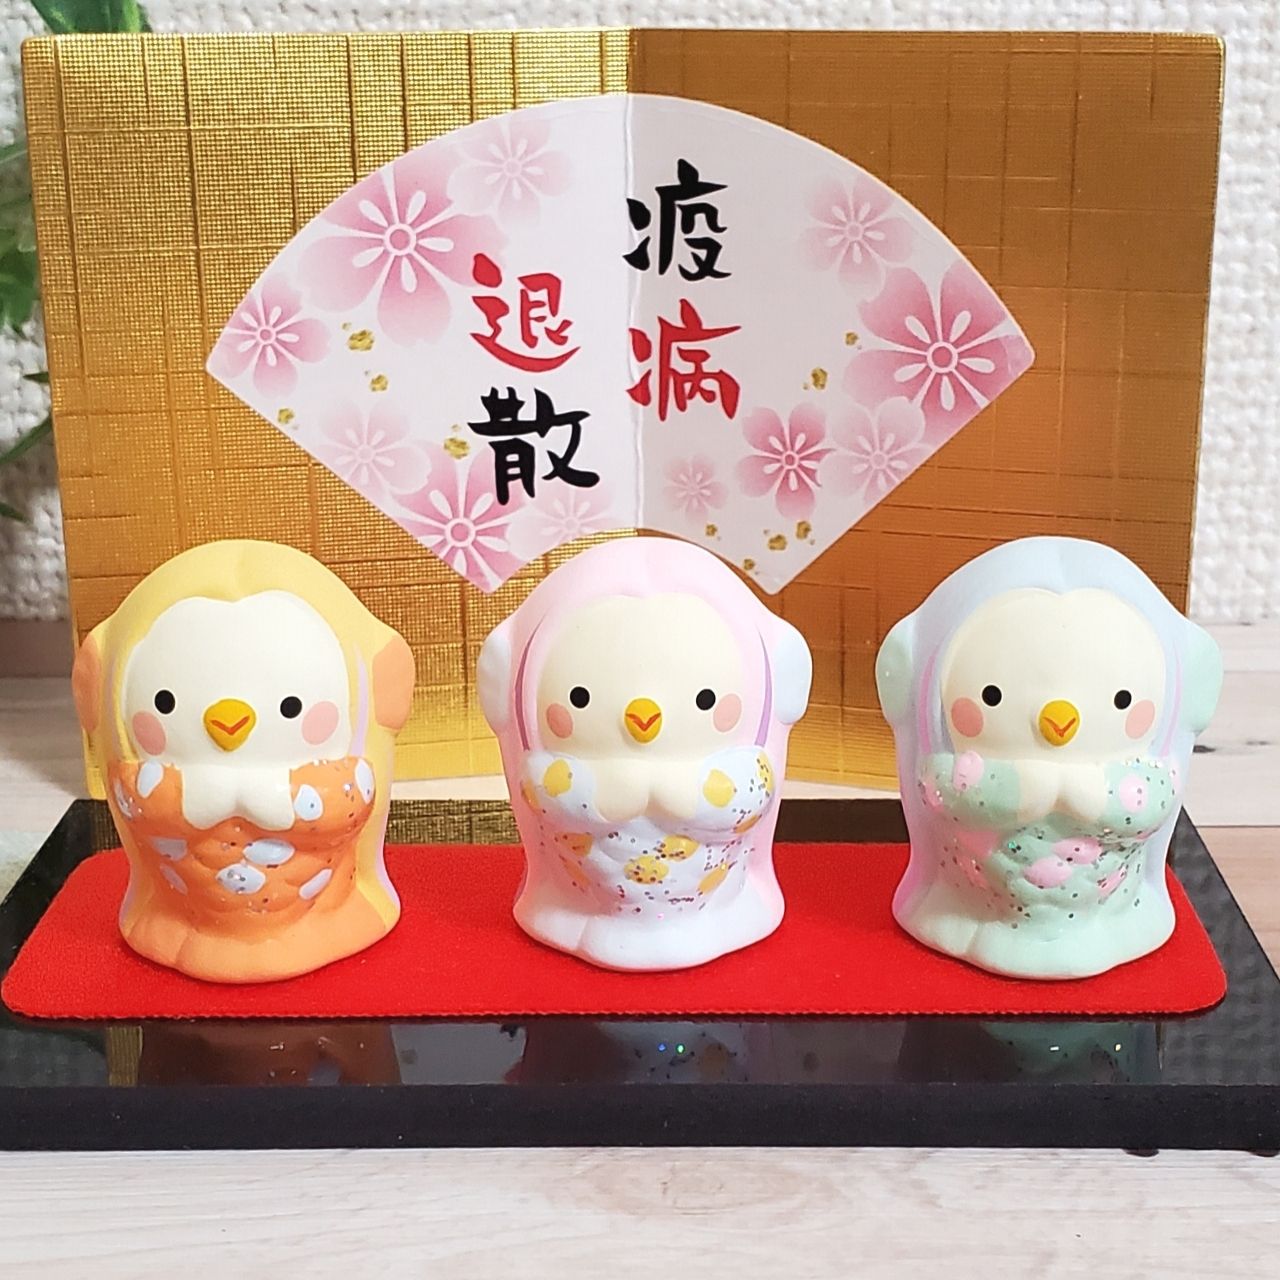 これはかわいい！素焼き陶器の3福豆人形(アマビエ)